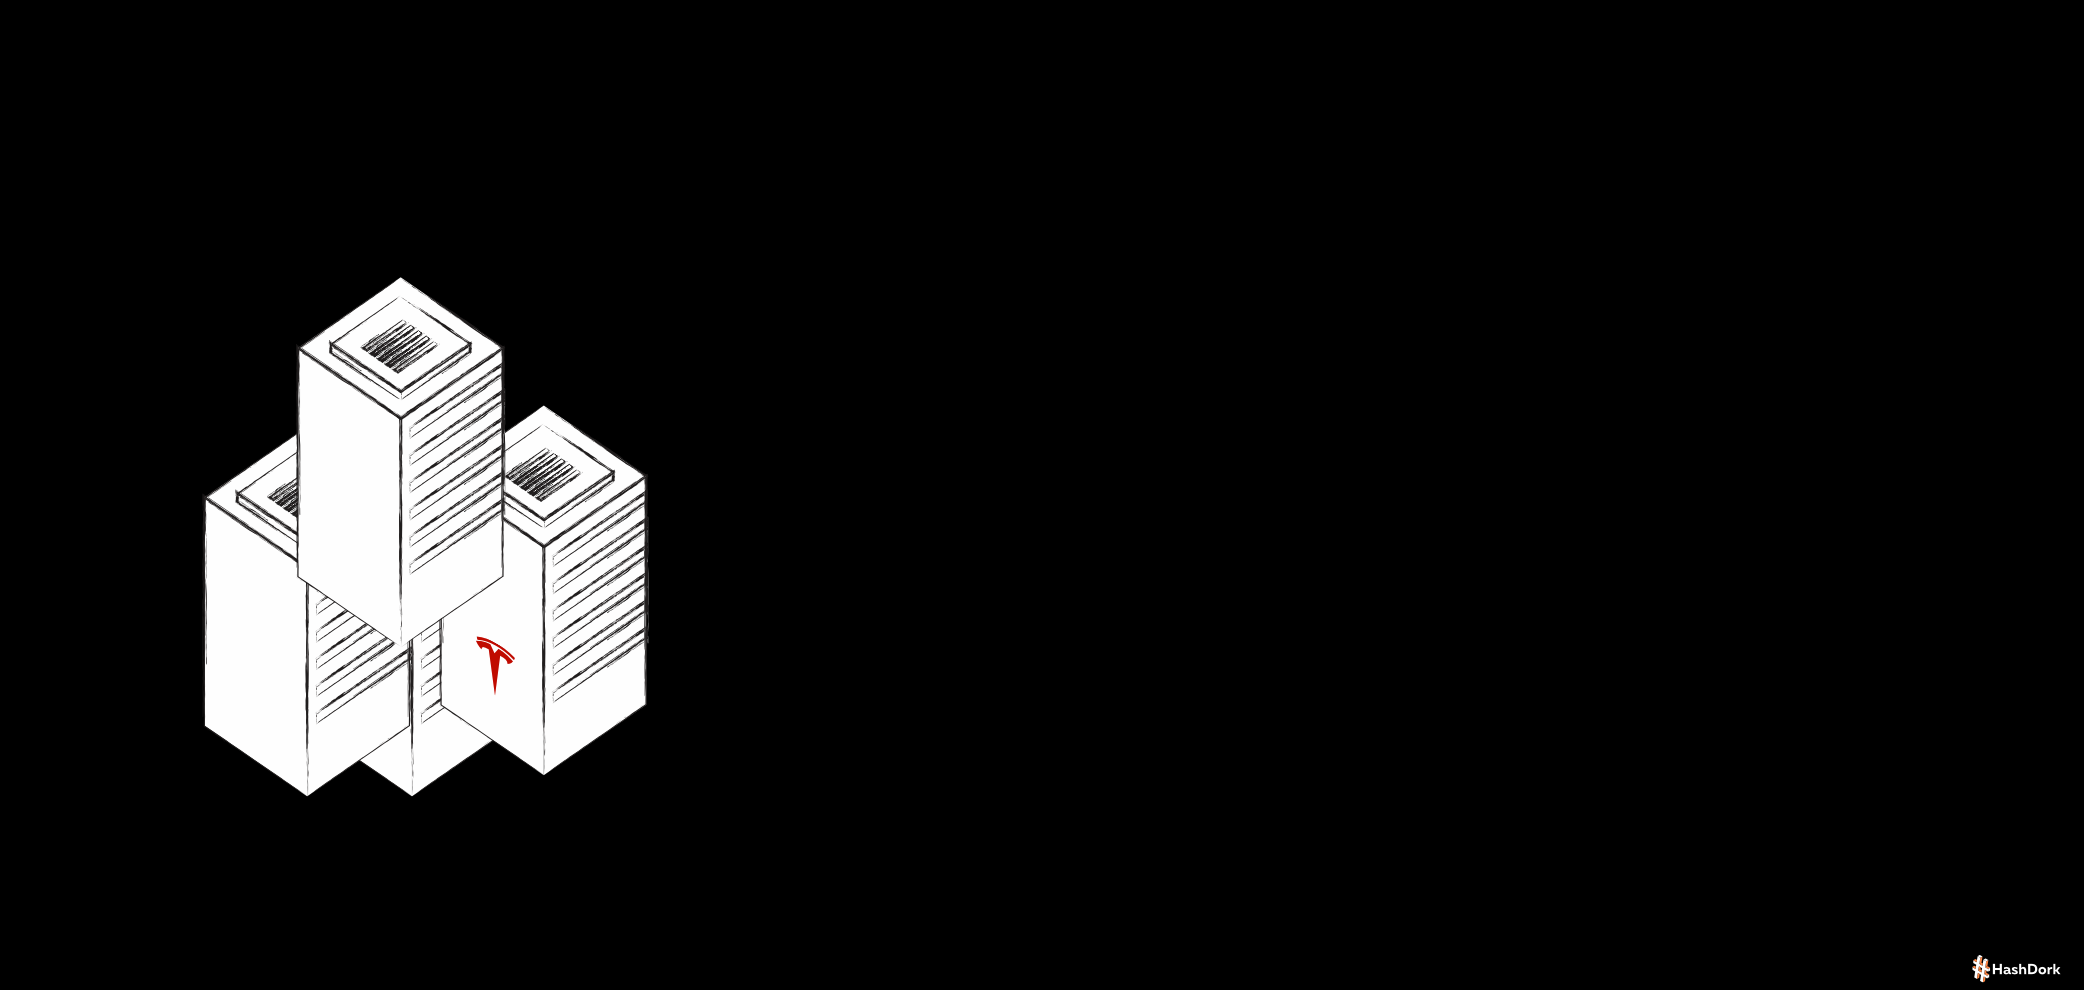 ಟೆಸ್ಲಾ ಡೋಜೊ ಸೂಪರ್‌ಕಂಪ್ಯೂಟರ್‌ನ ಪ್ರತಿಯನ್ನು ವೈಶಿಷ್ಟ್ಯಗೊಳಿಸಲಾಗಿದೆ ಎಂದು ವಿವರಿಸಲಾಗಿದೆ